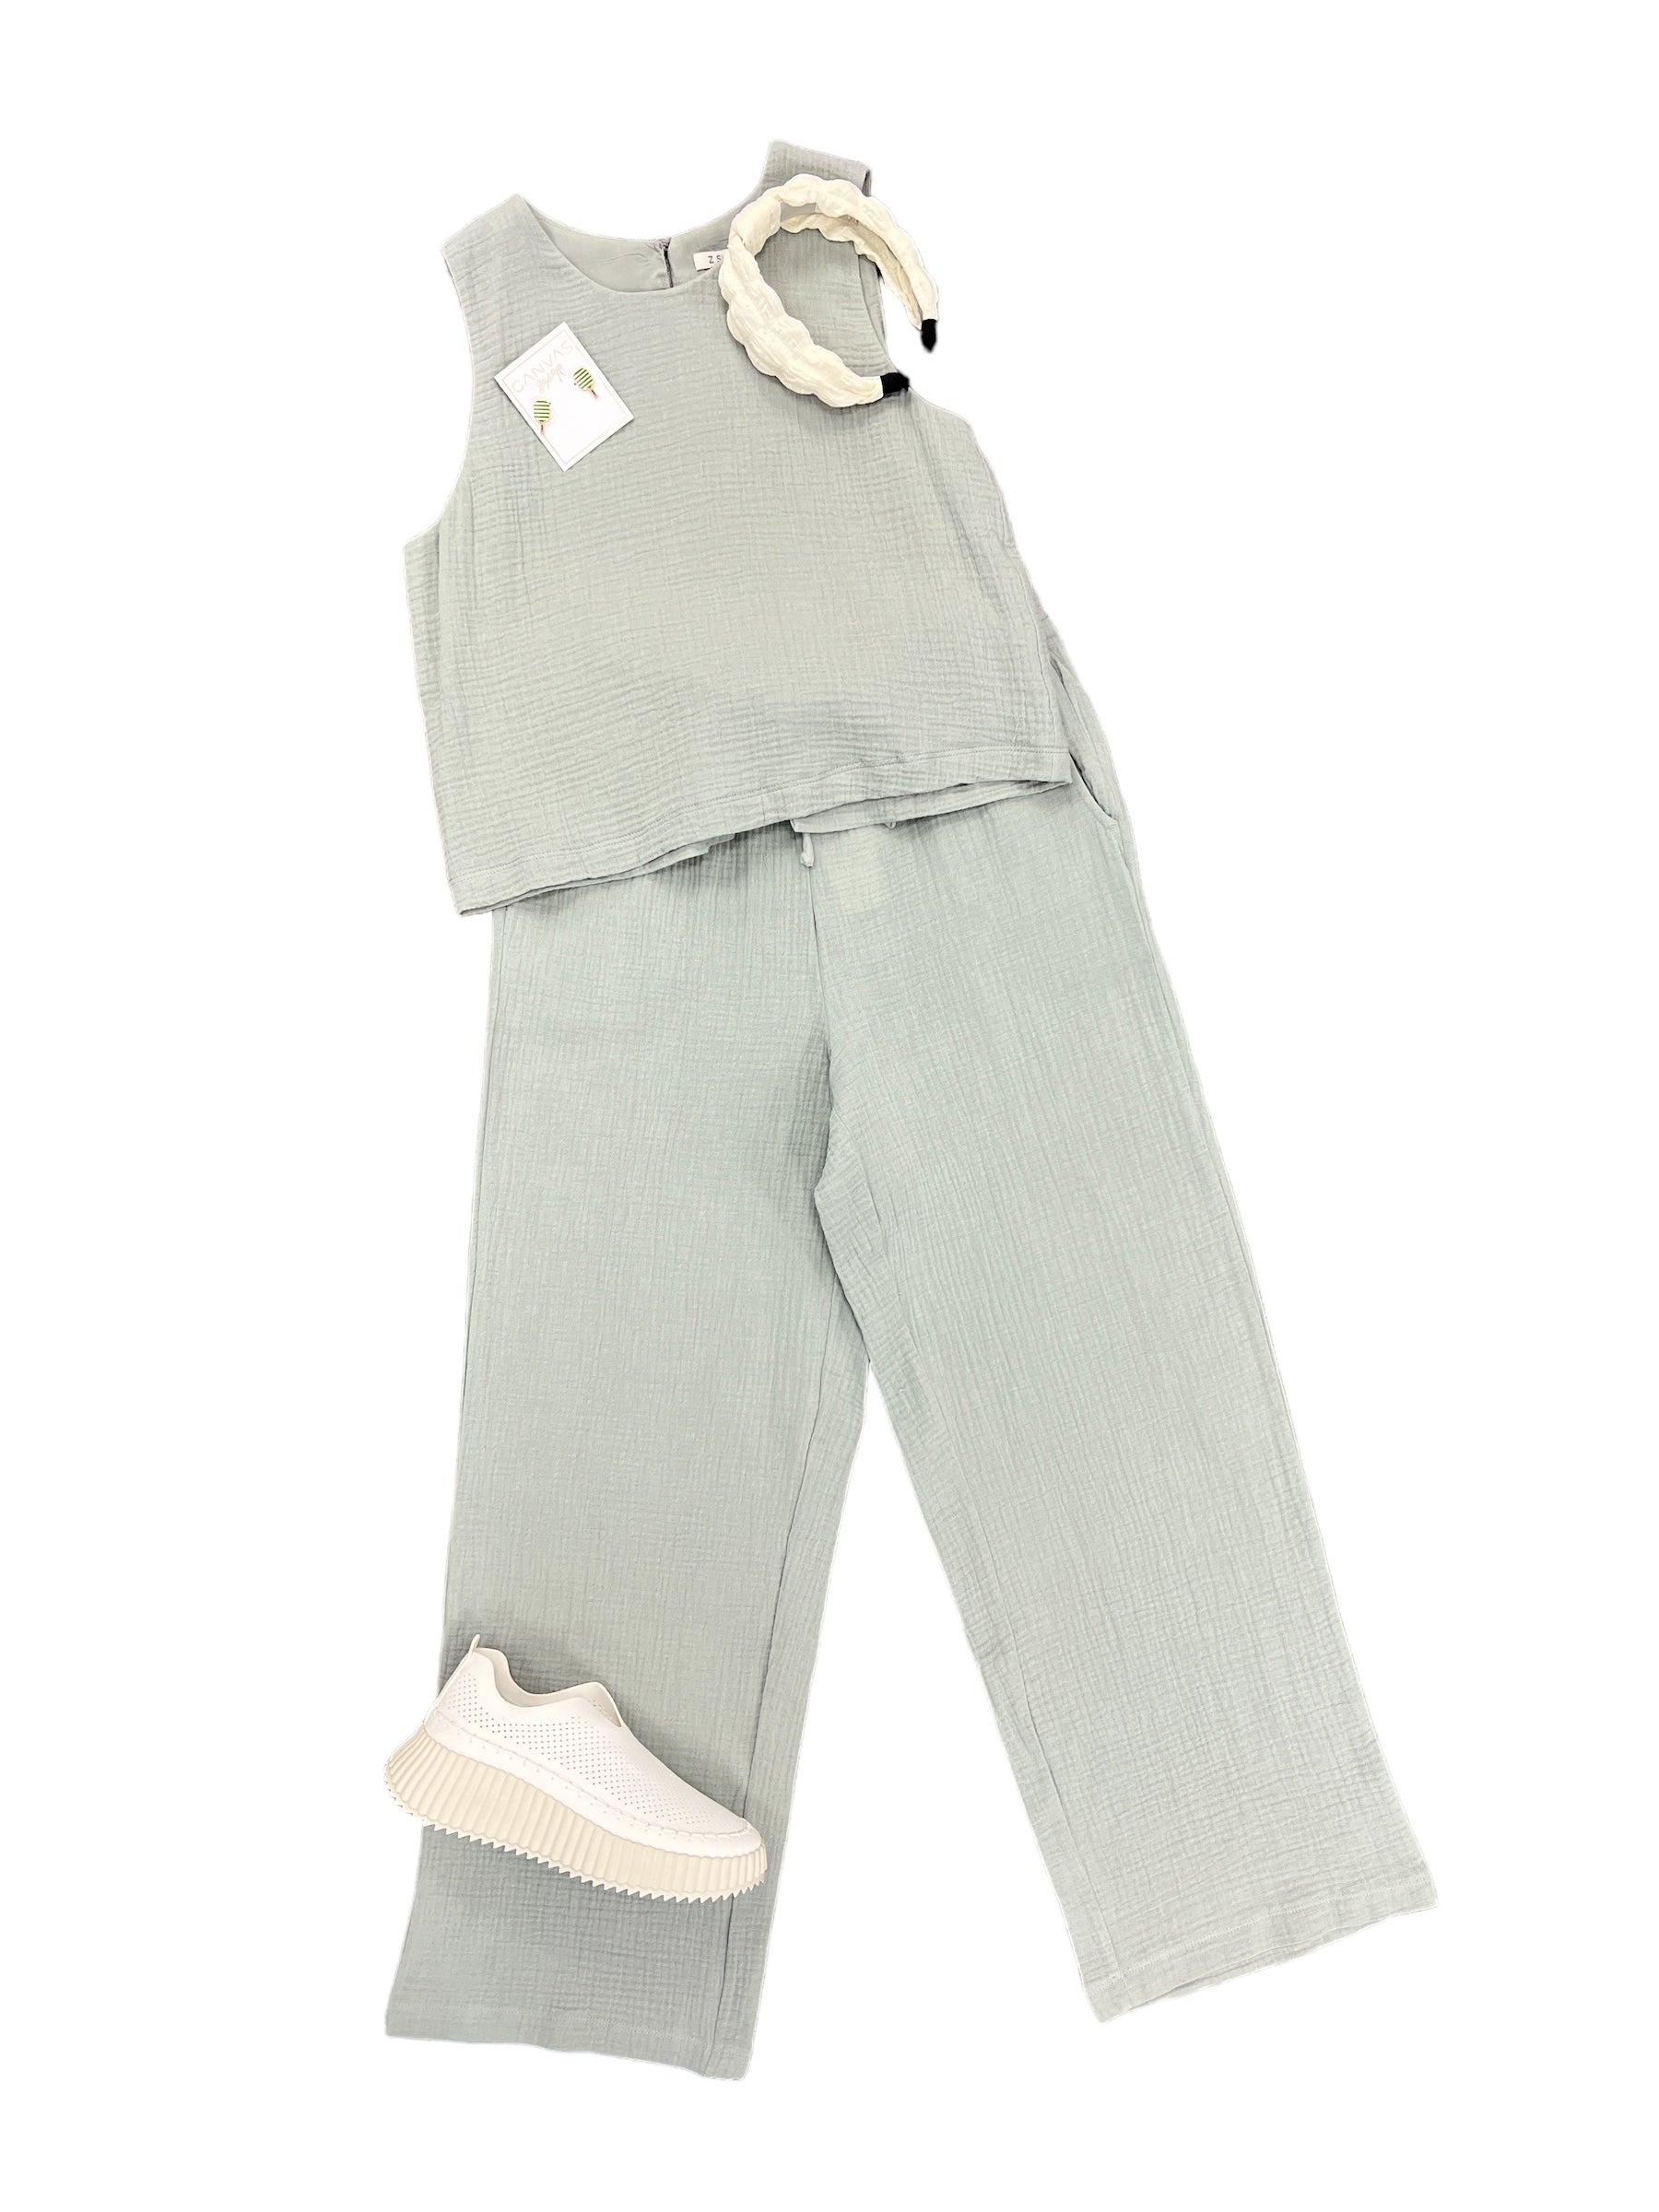 Bondi Pant-230 Pants-Z Supply-Simply Stylish Boutique | Women’s & Kid’s Fashion | Paducah, KY